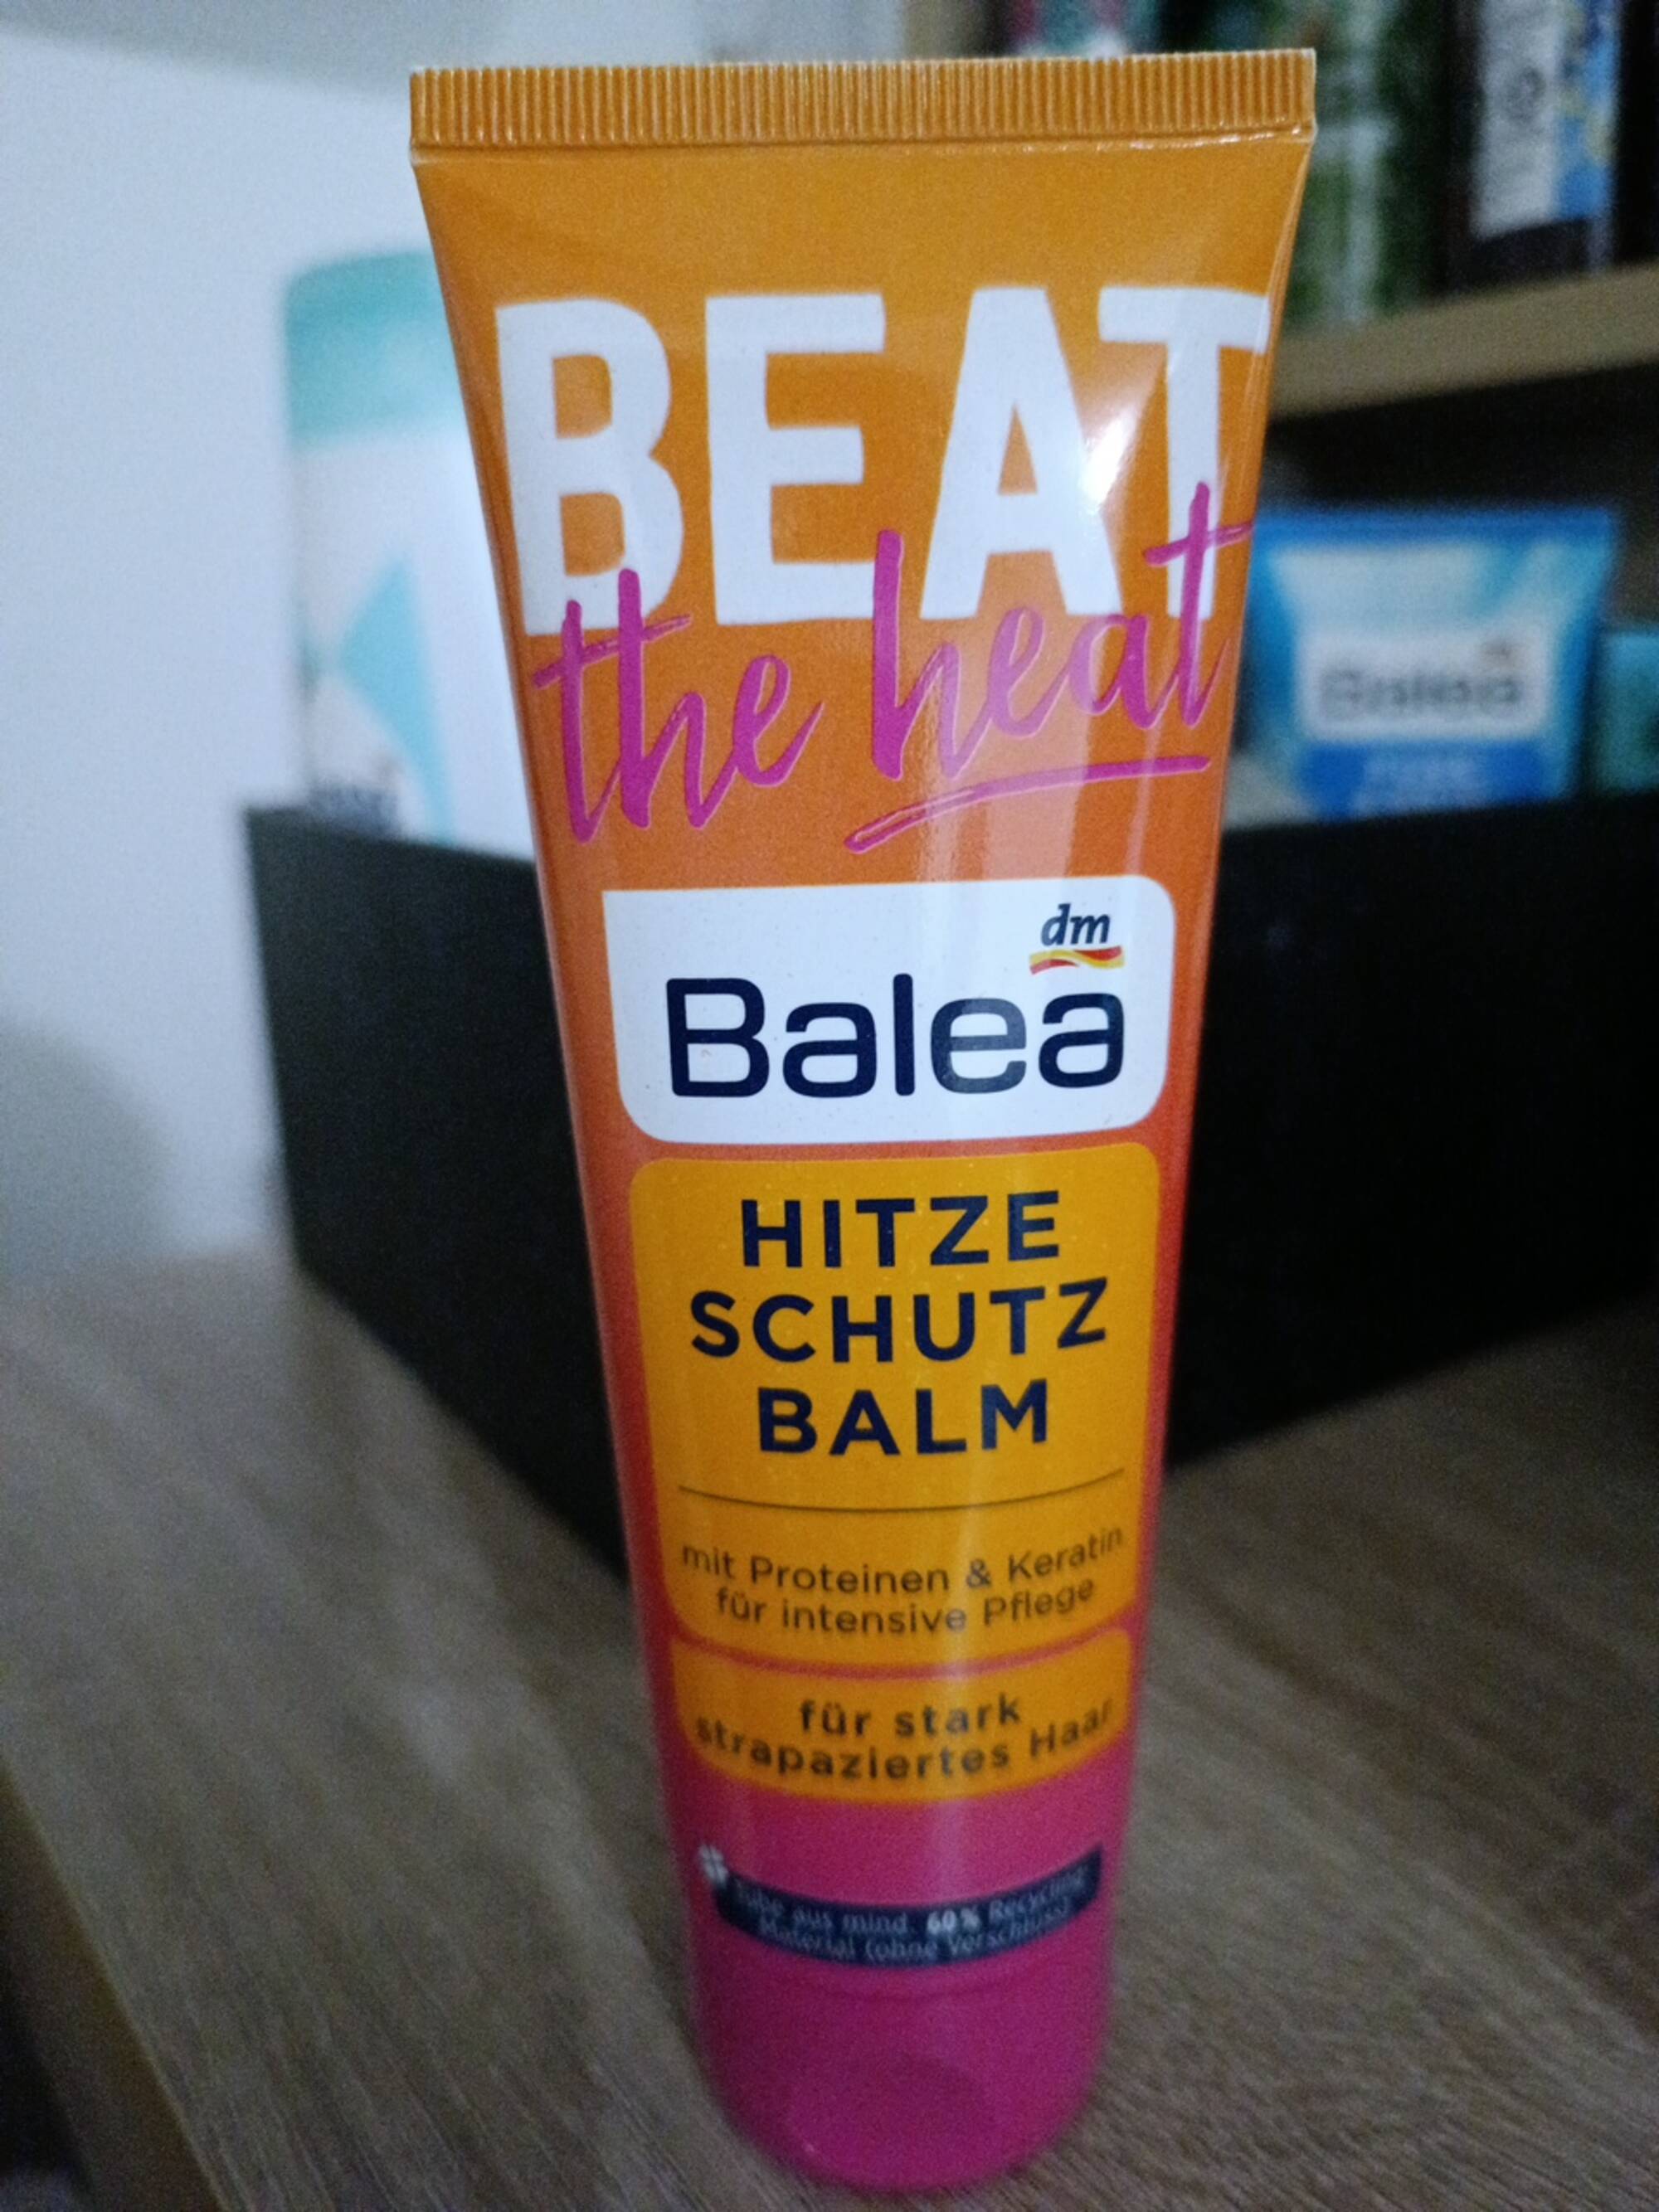 BALEA - Beat the heat - Hitzeschutz balm